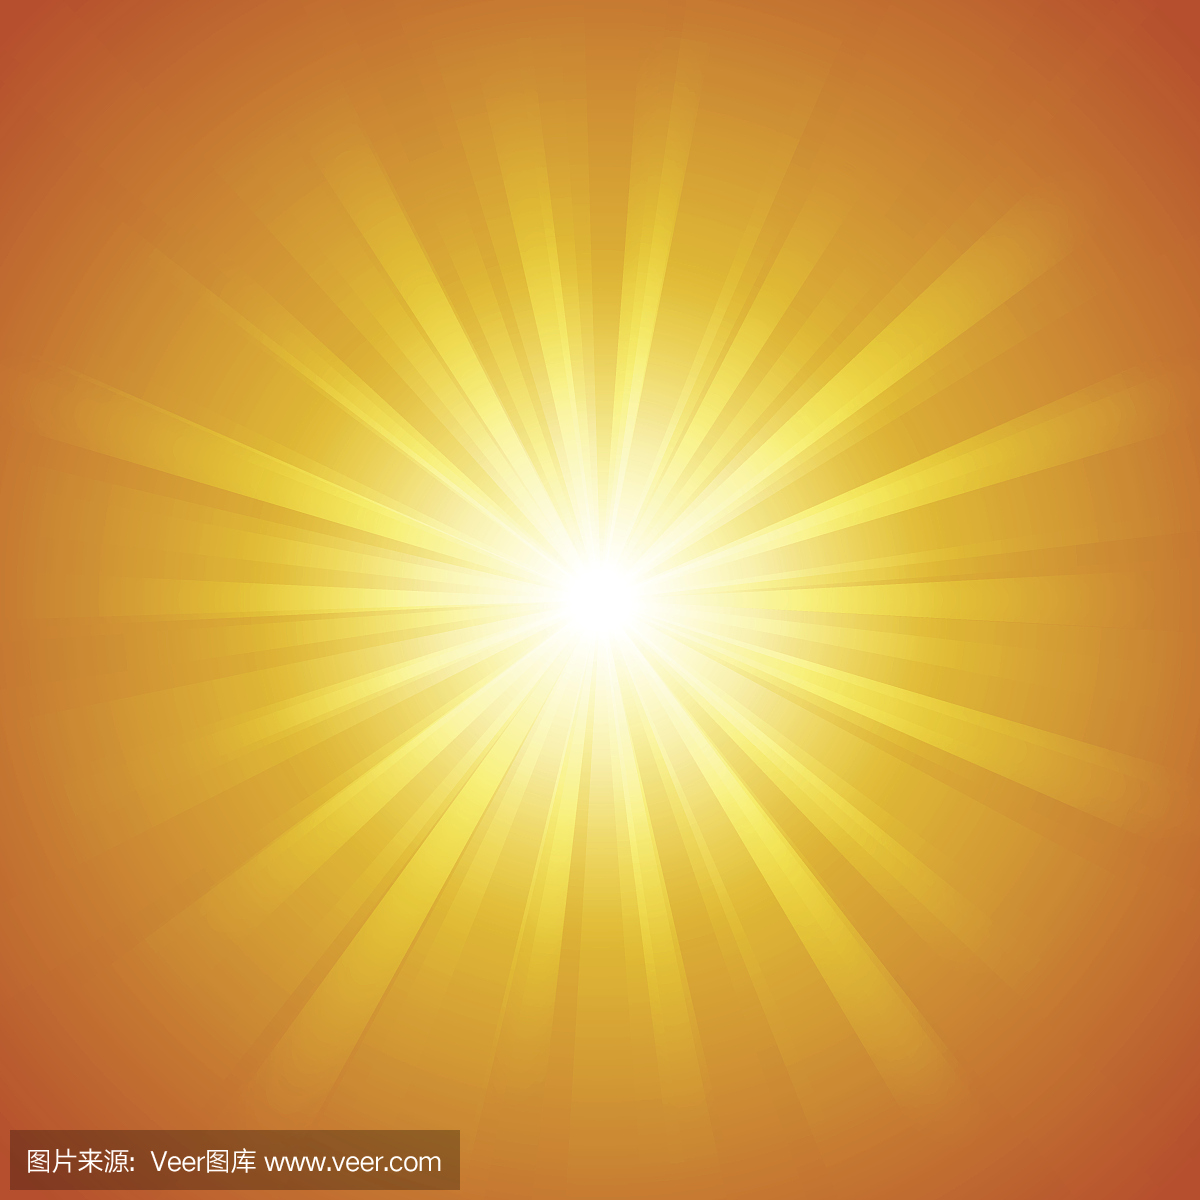 抽象夏天橙色背景与太阳光射线